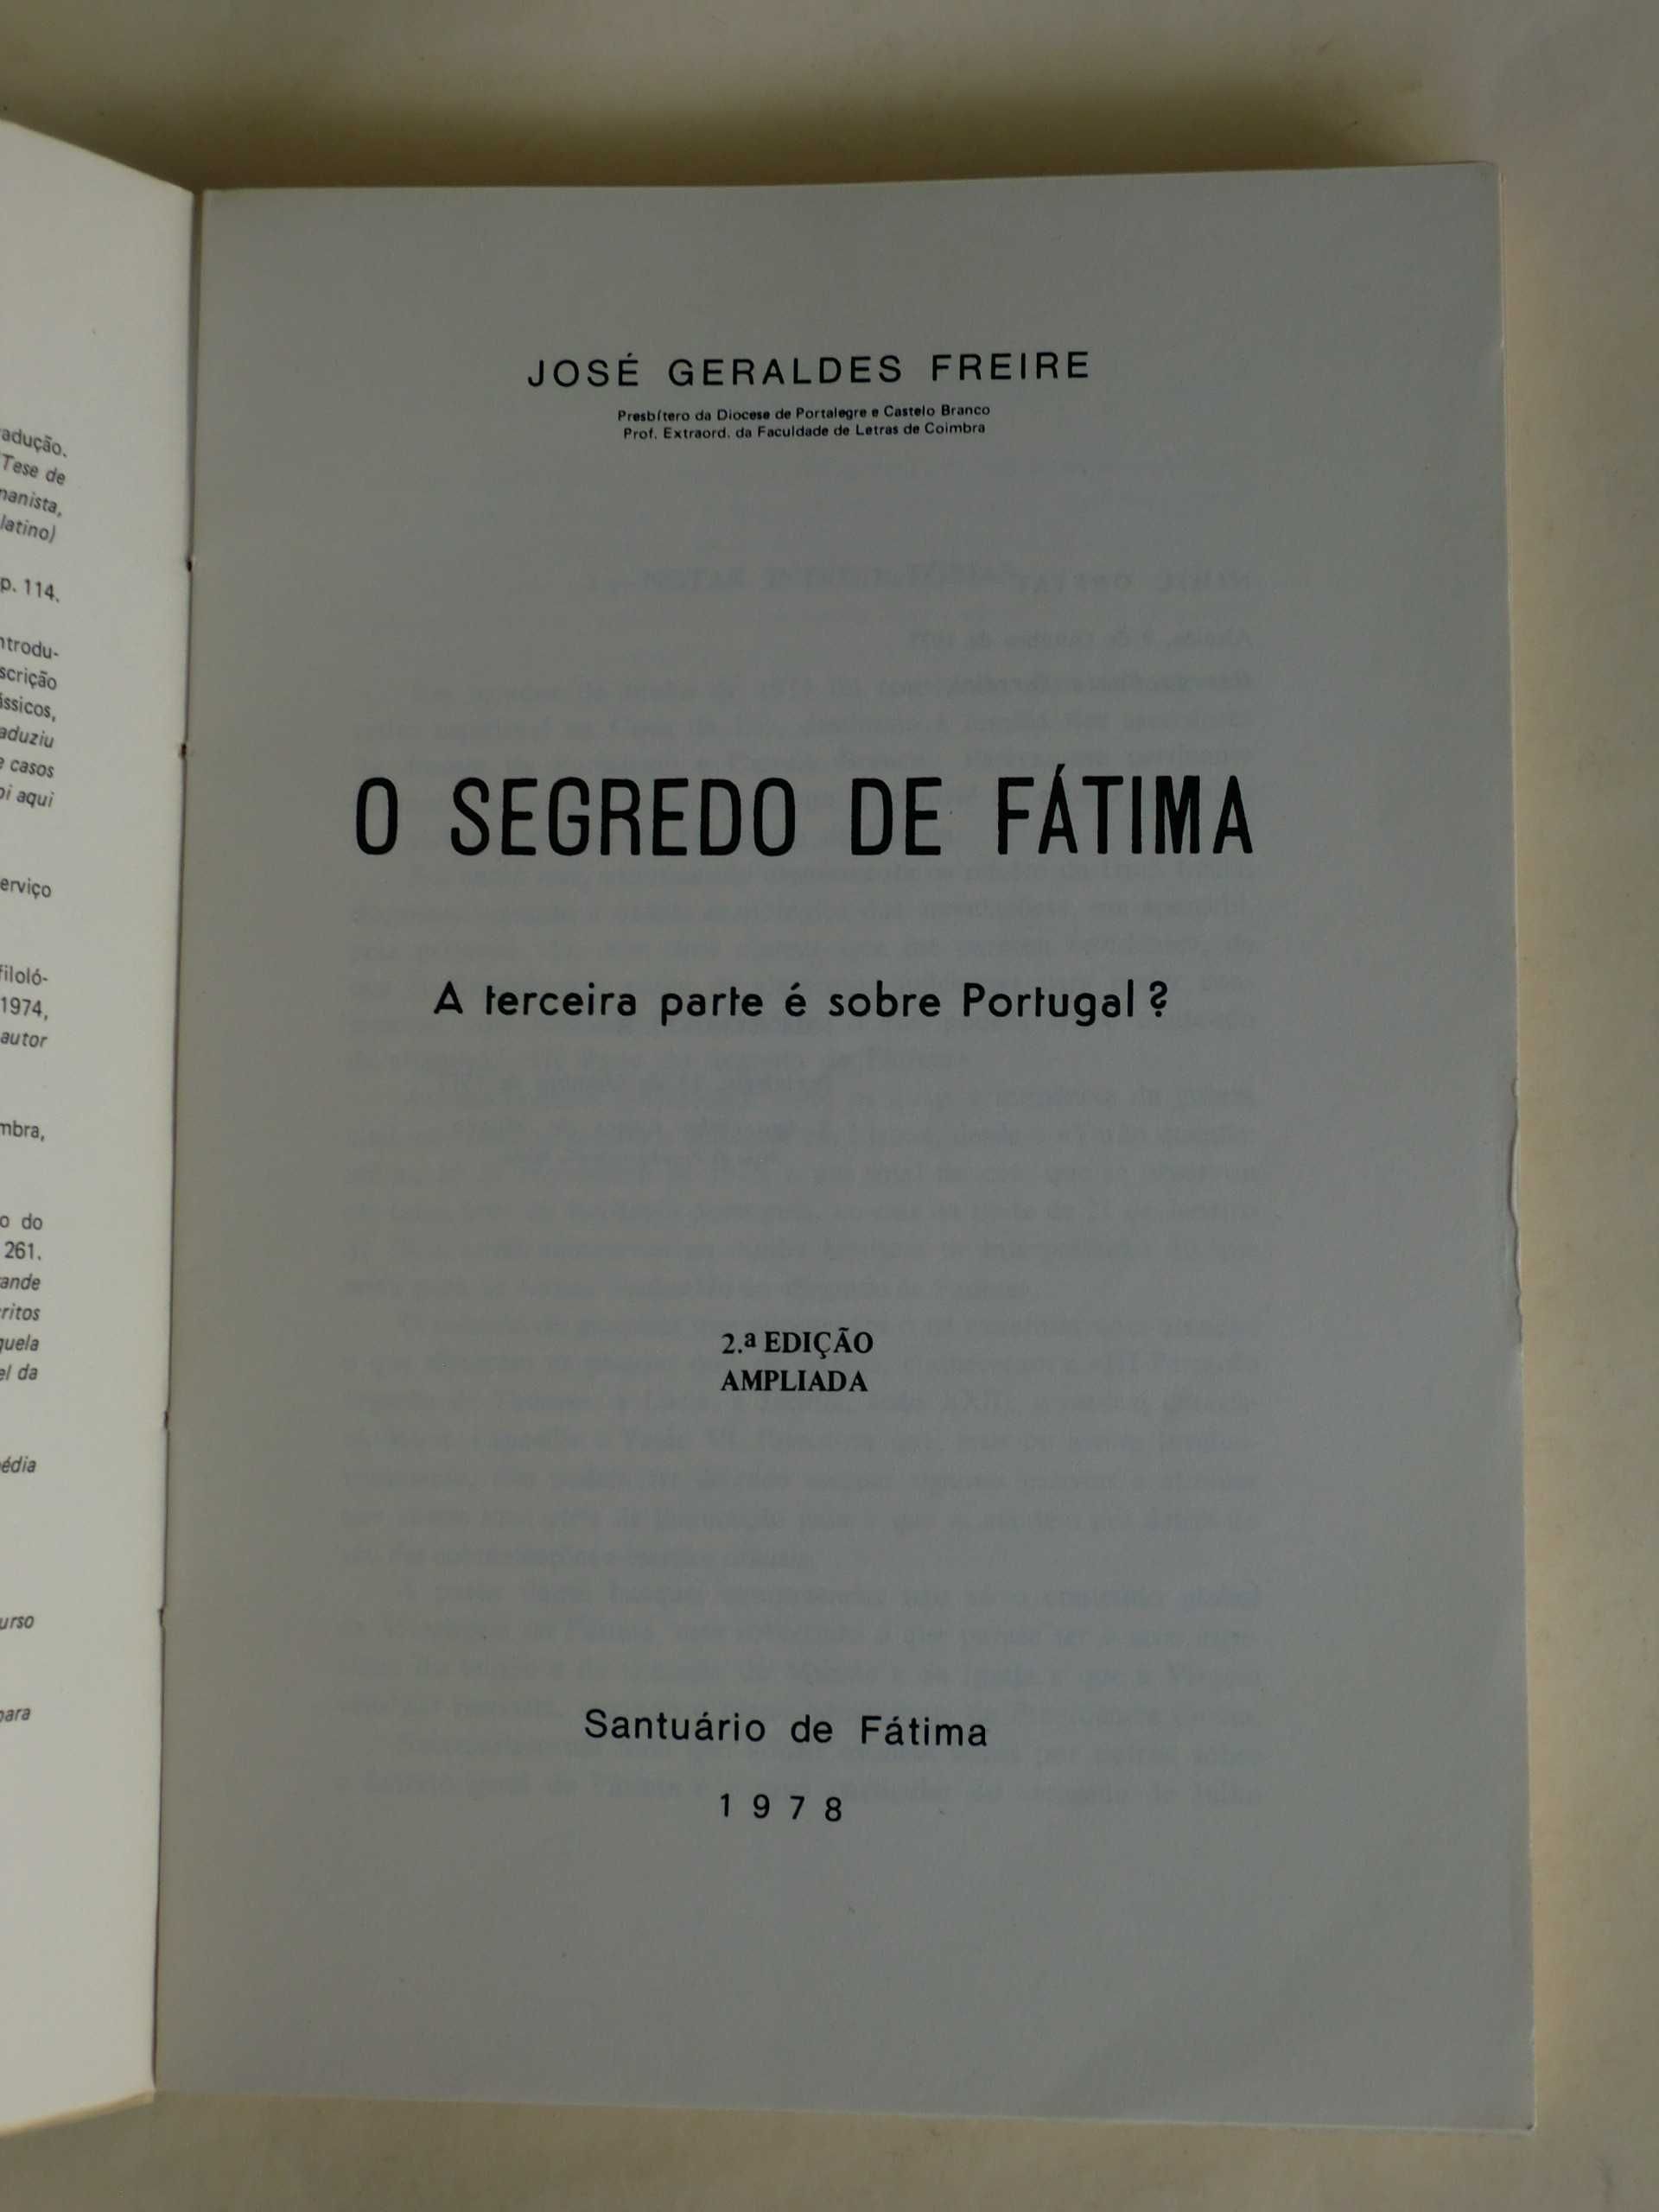 O Segredo de Fátima
de José Geraldes Freire